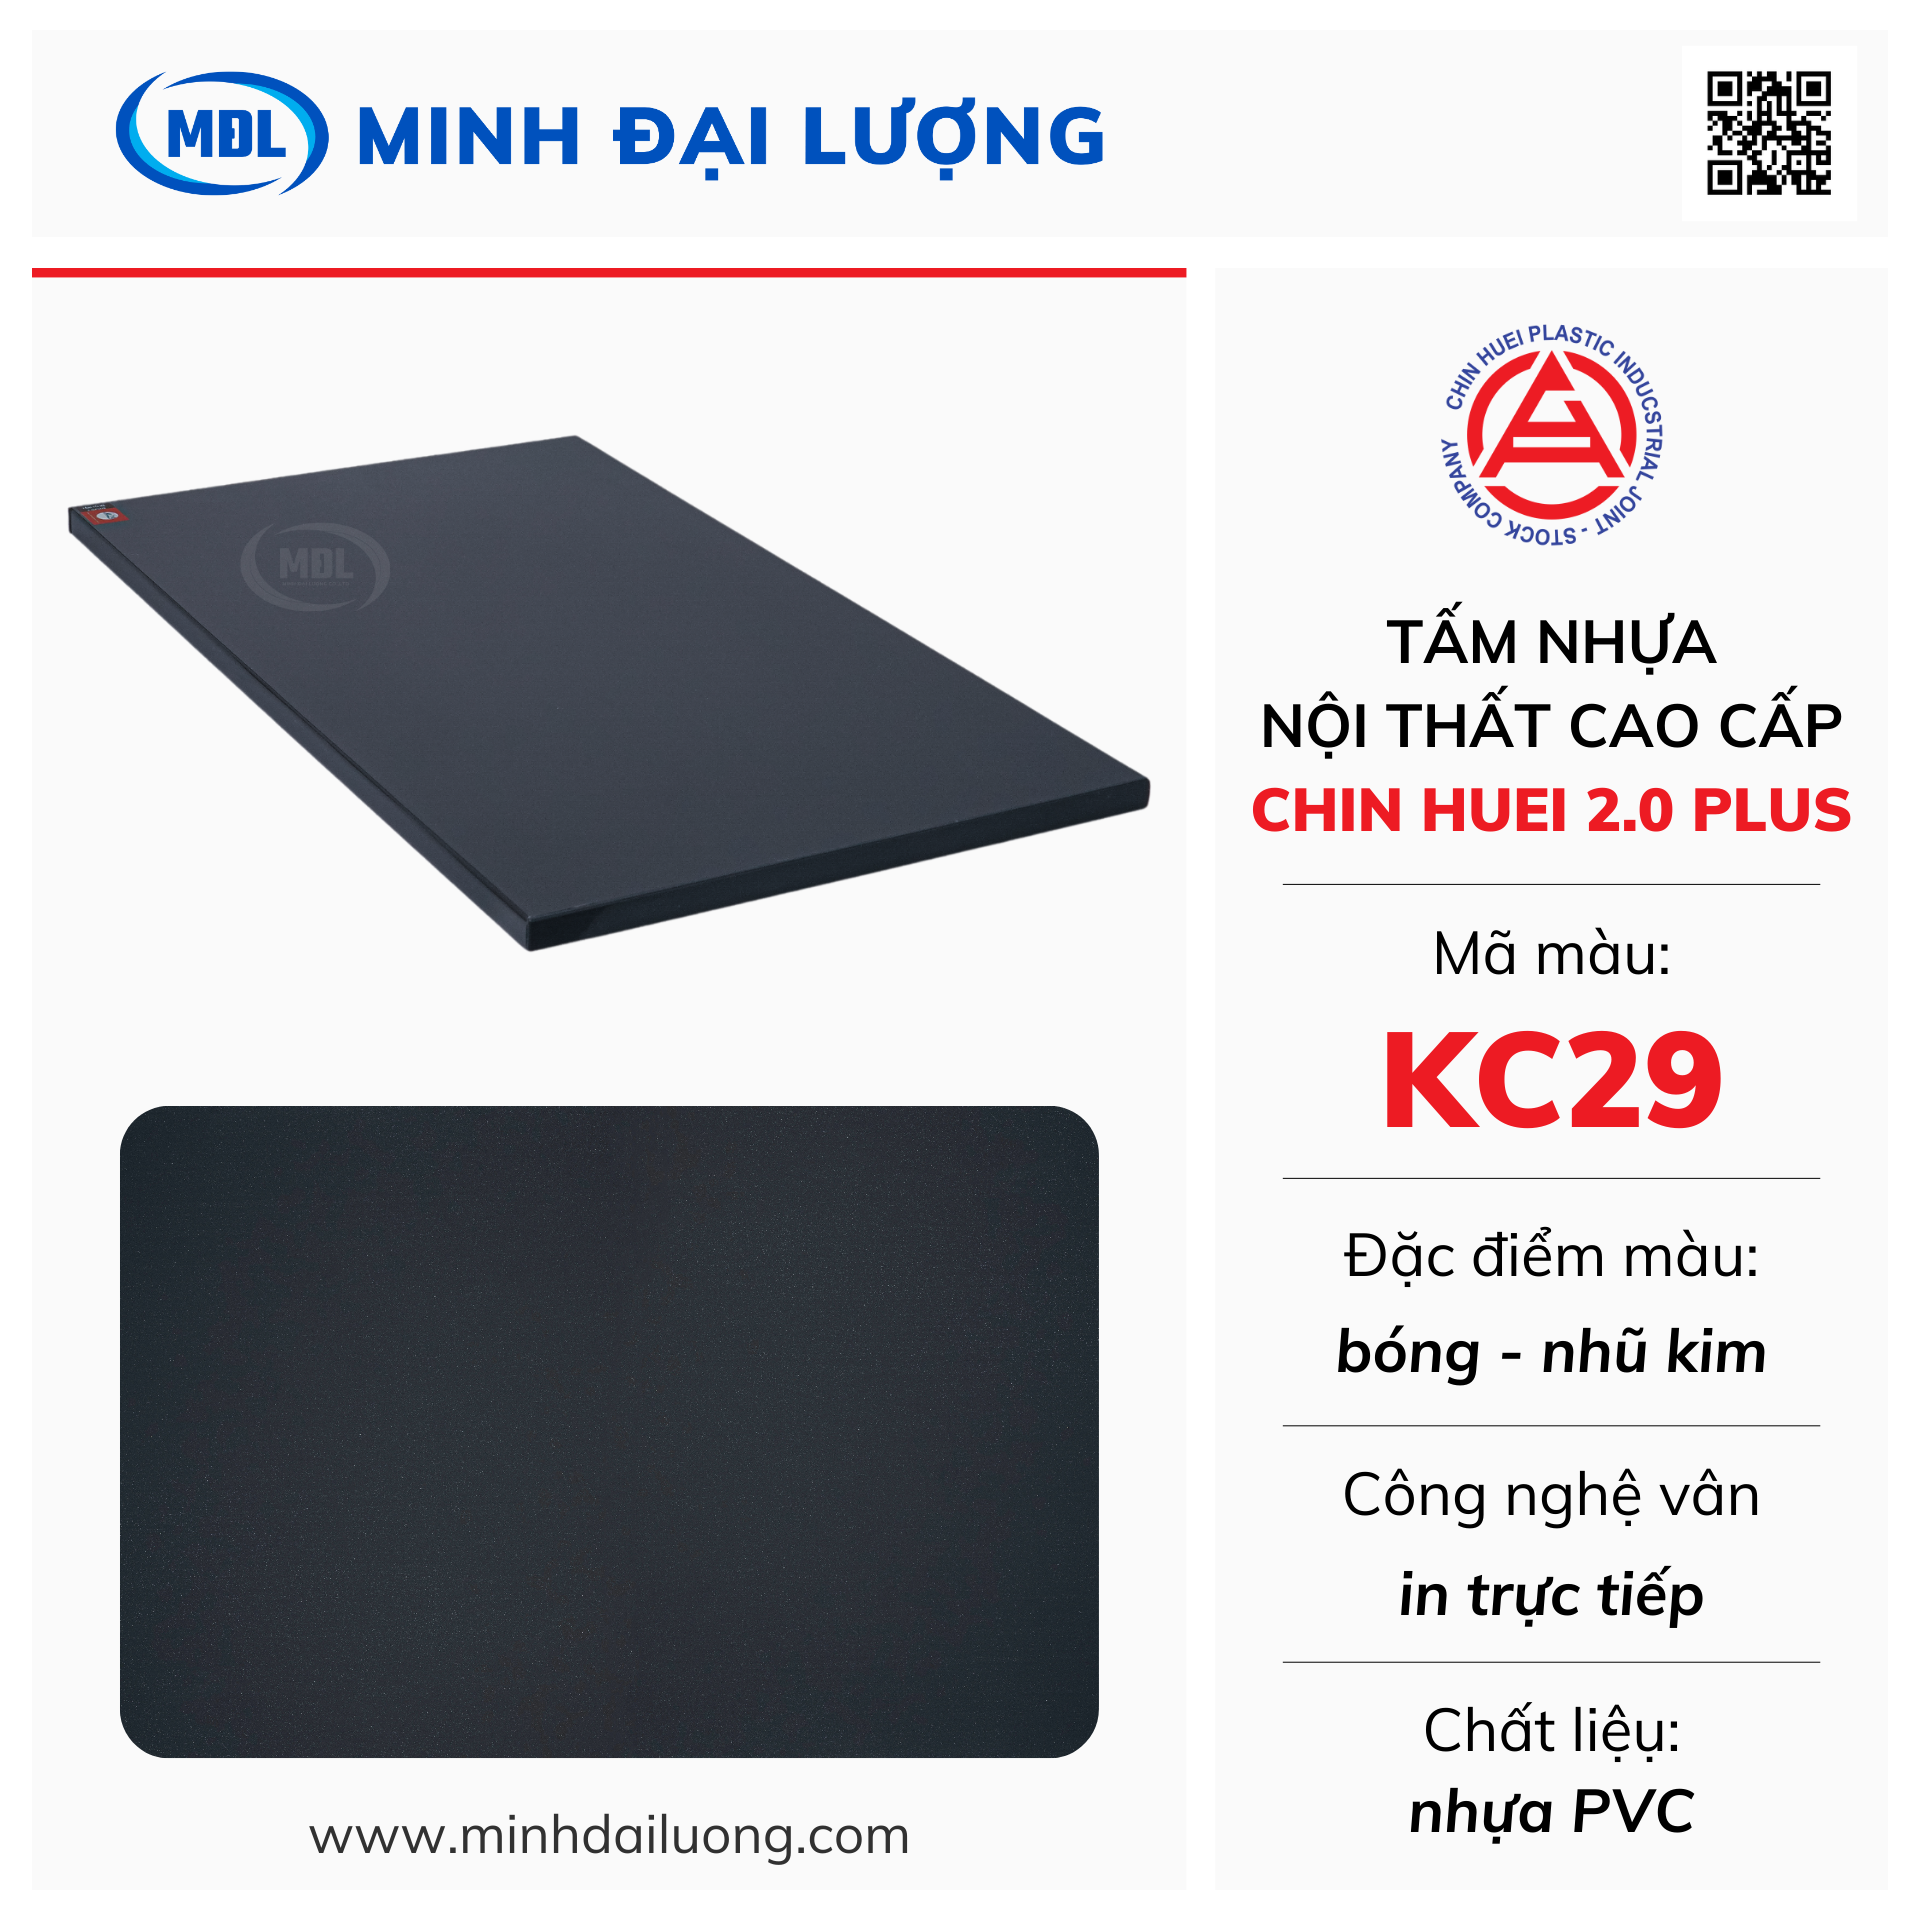 Tấm nhựa nội thất cao cấp Chin Huei 2.0 Plus màu KC29